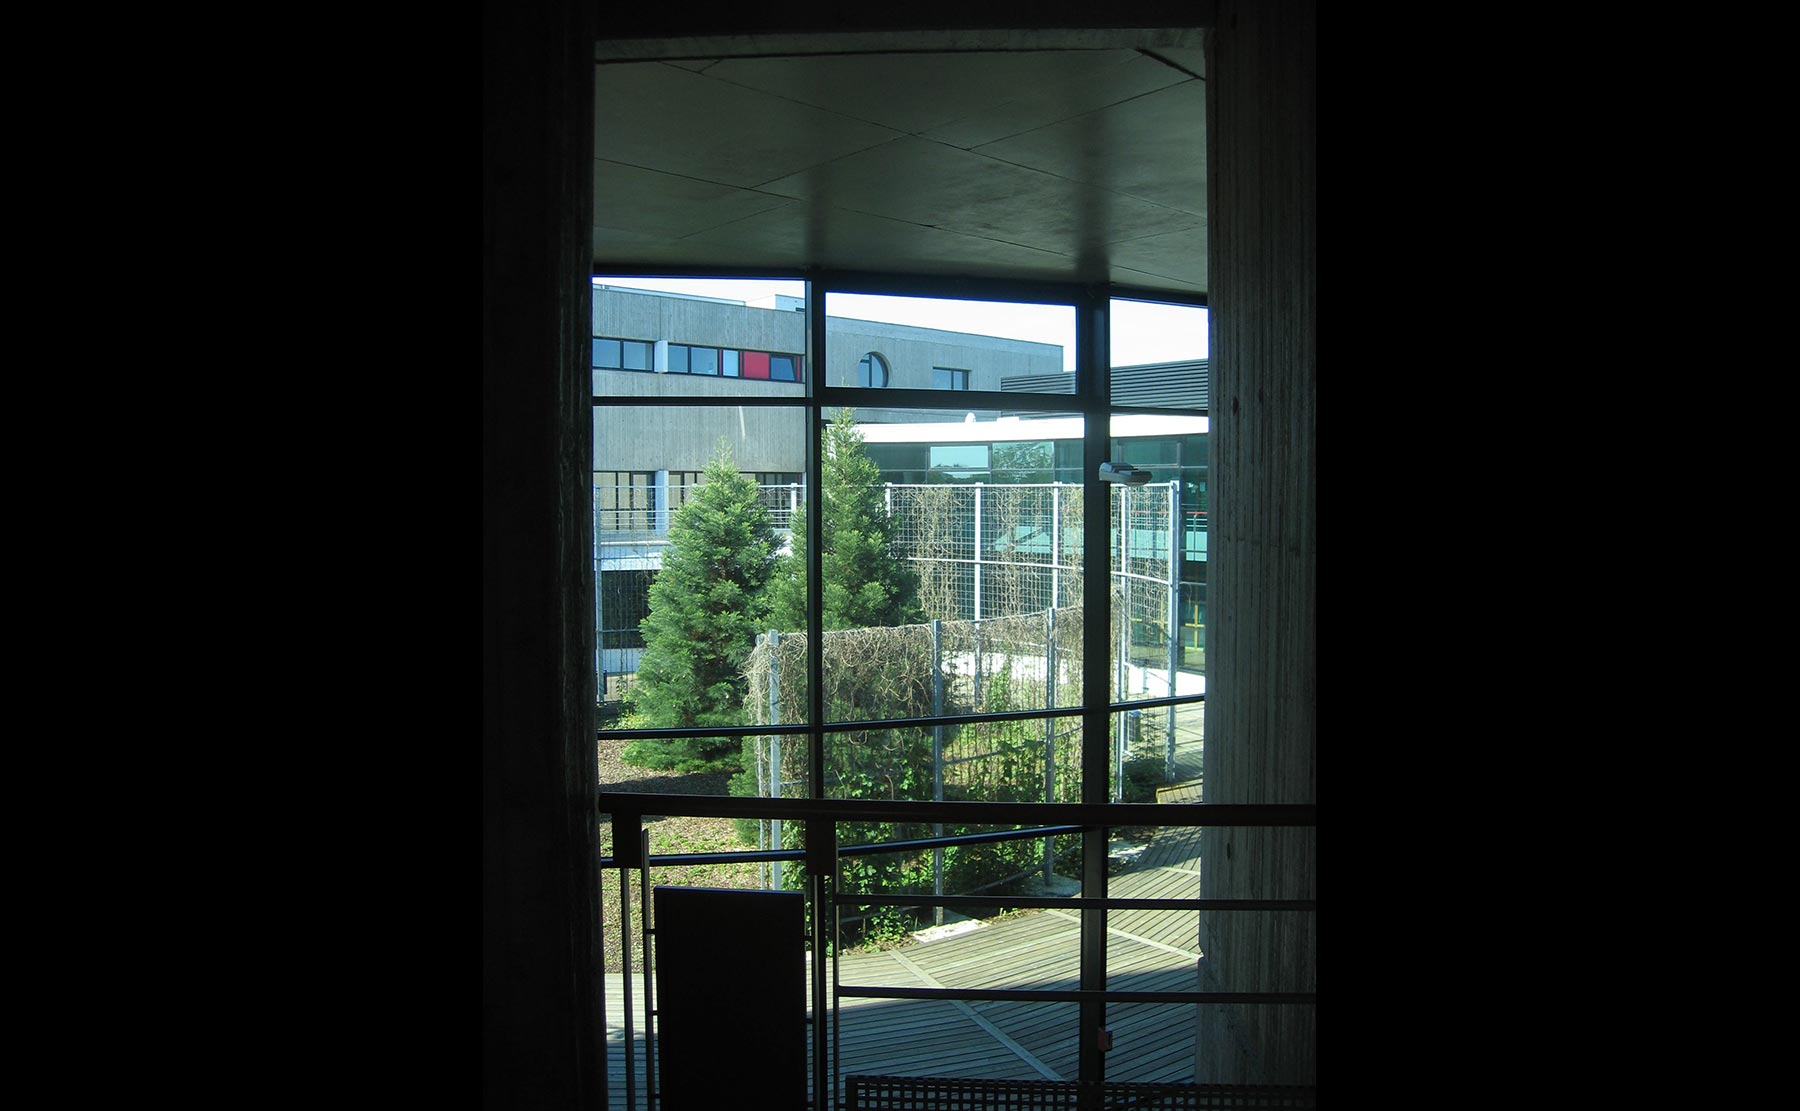  - Faculté des Sciences et Techniques / Mulhouse